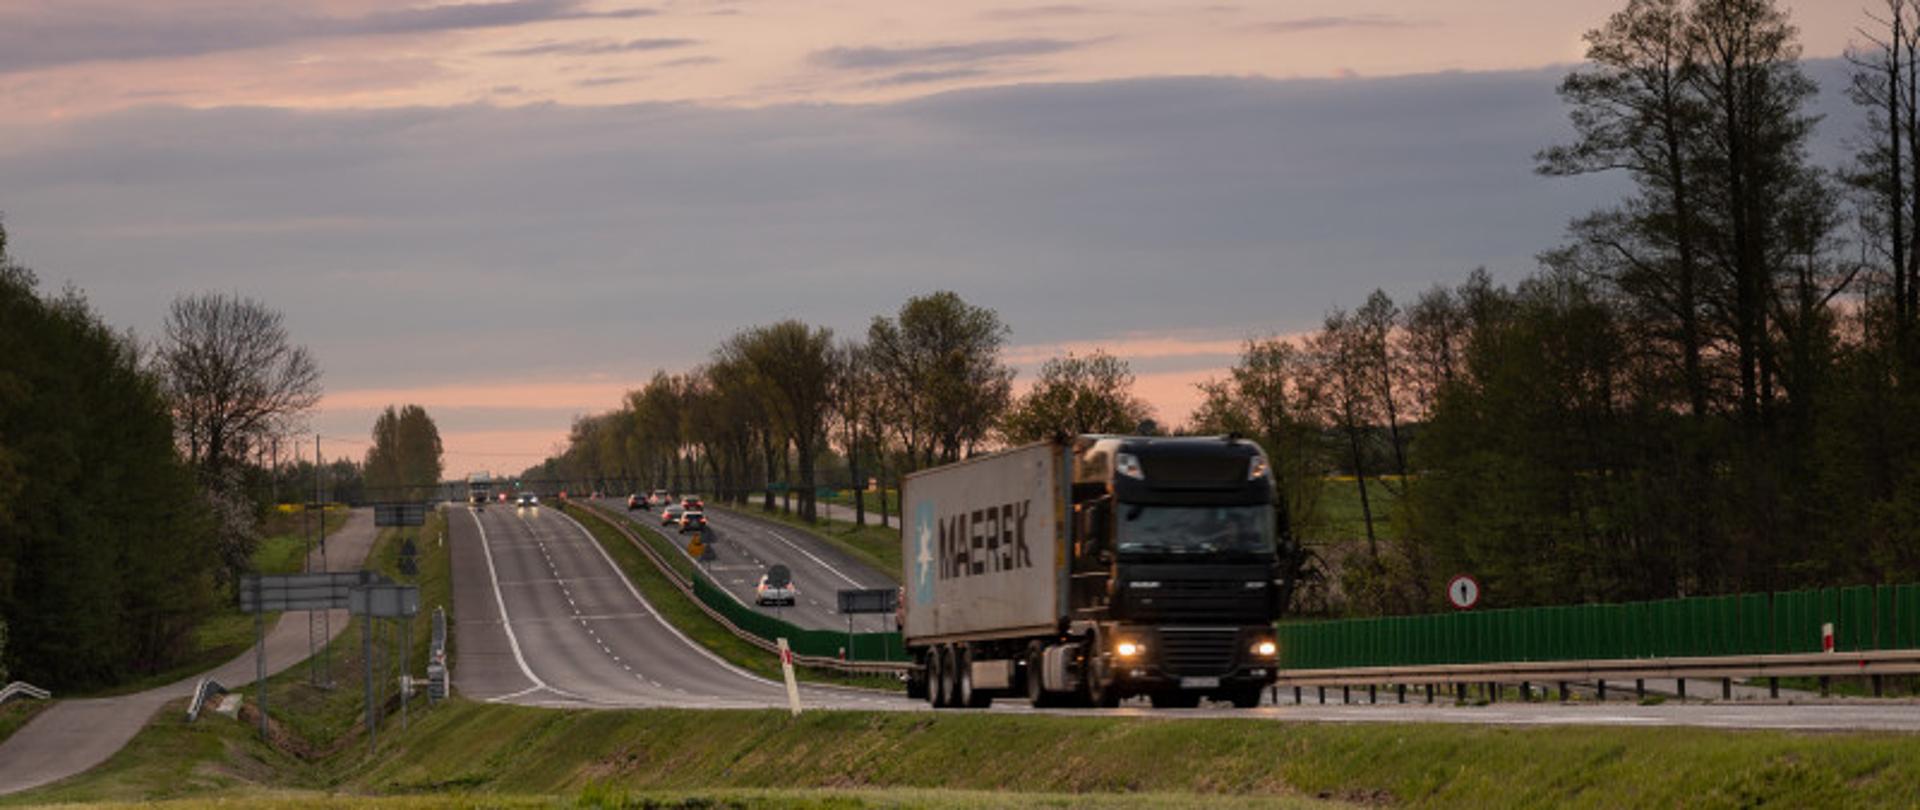 Na zdjęciu widać ciężarówkę, która porusza się po drodze dwujezdniowej. W tle widać zachód słońca.